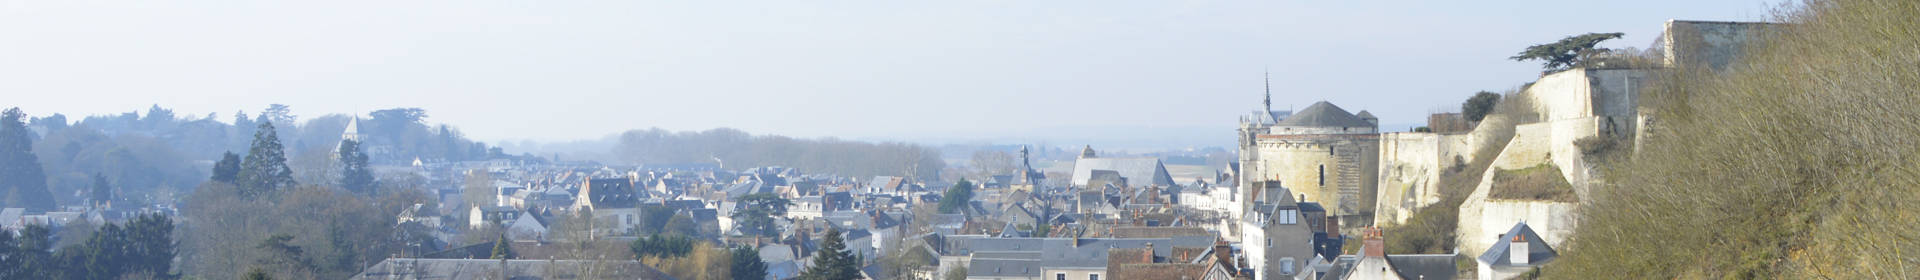 Vue sur les toits de la ville d'Amboise.